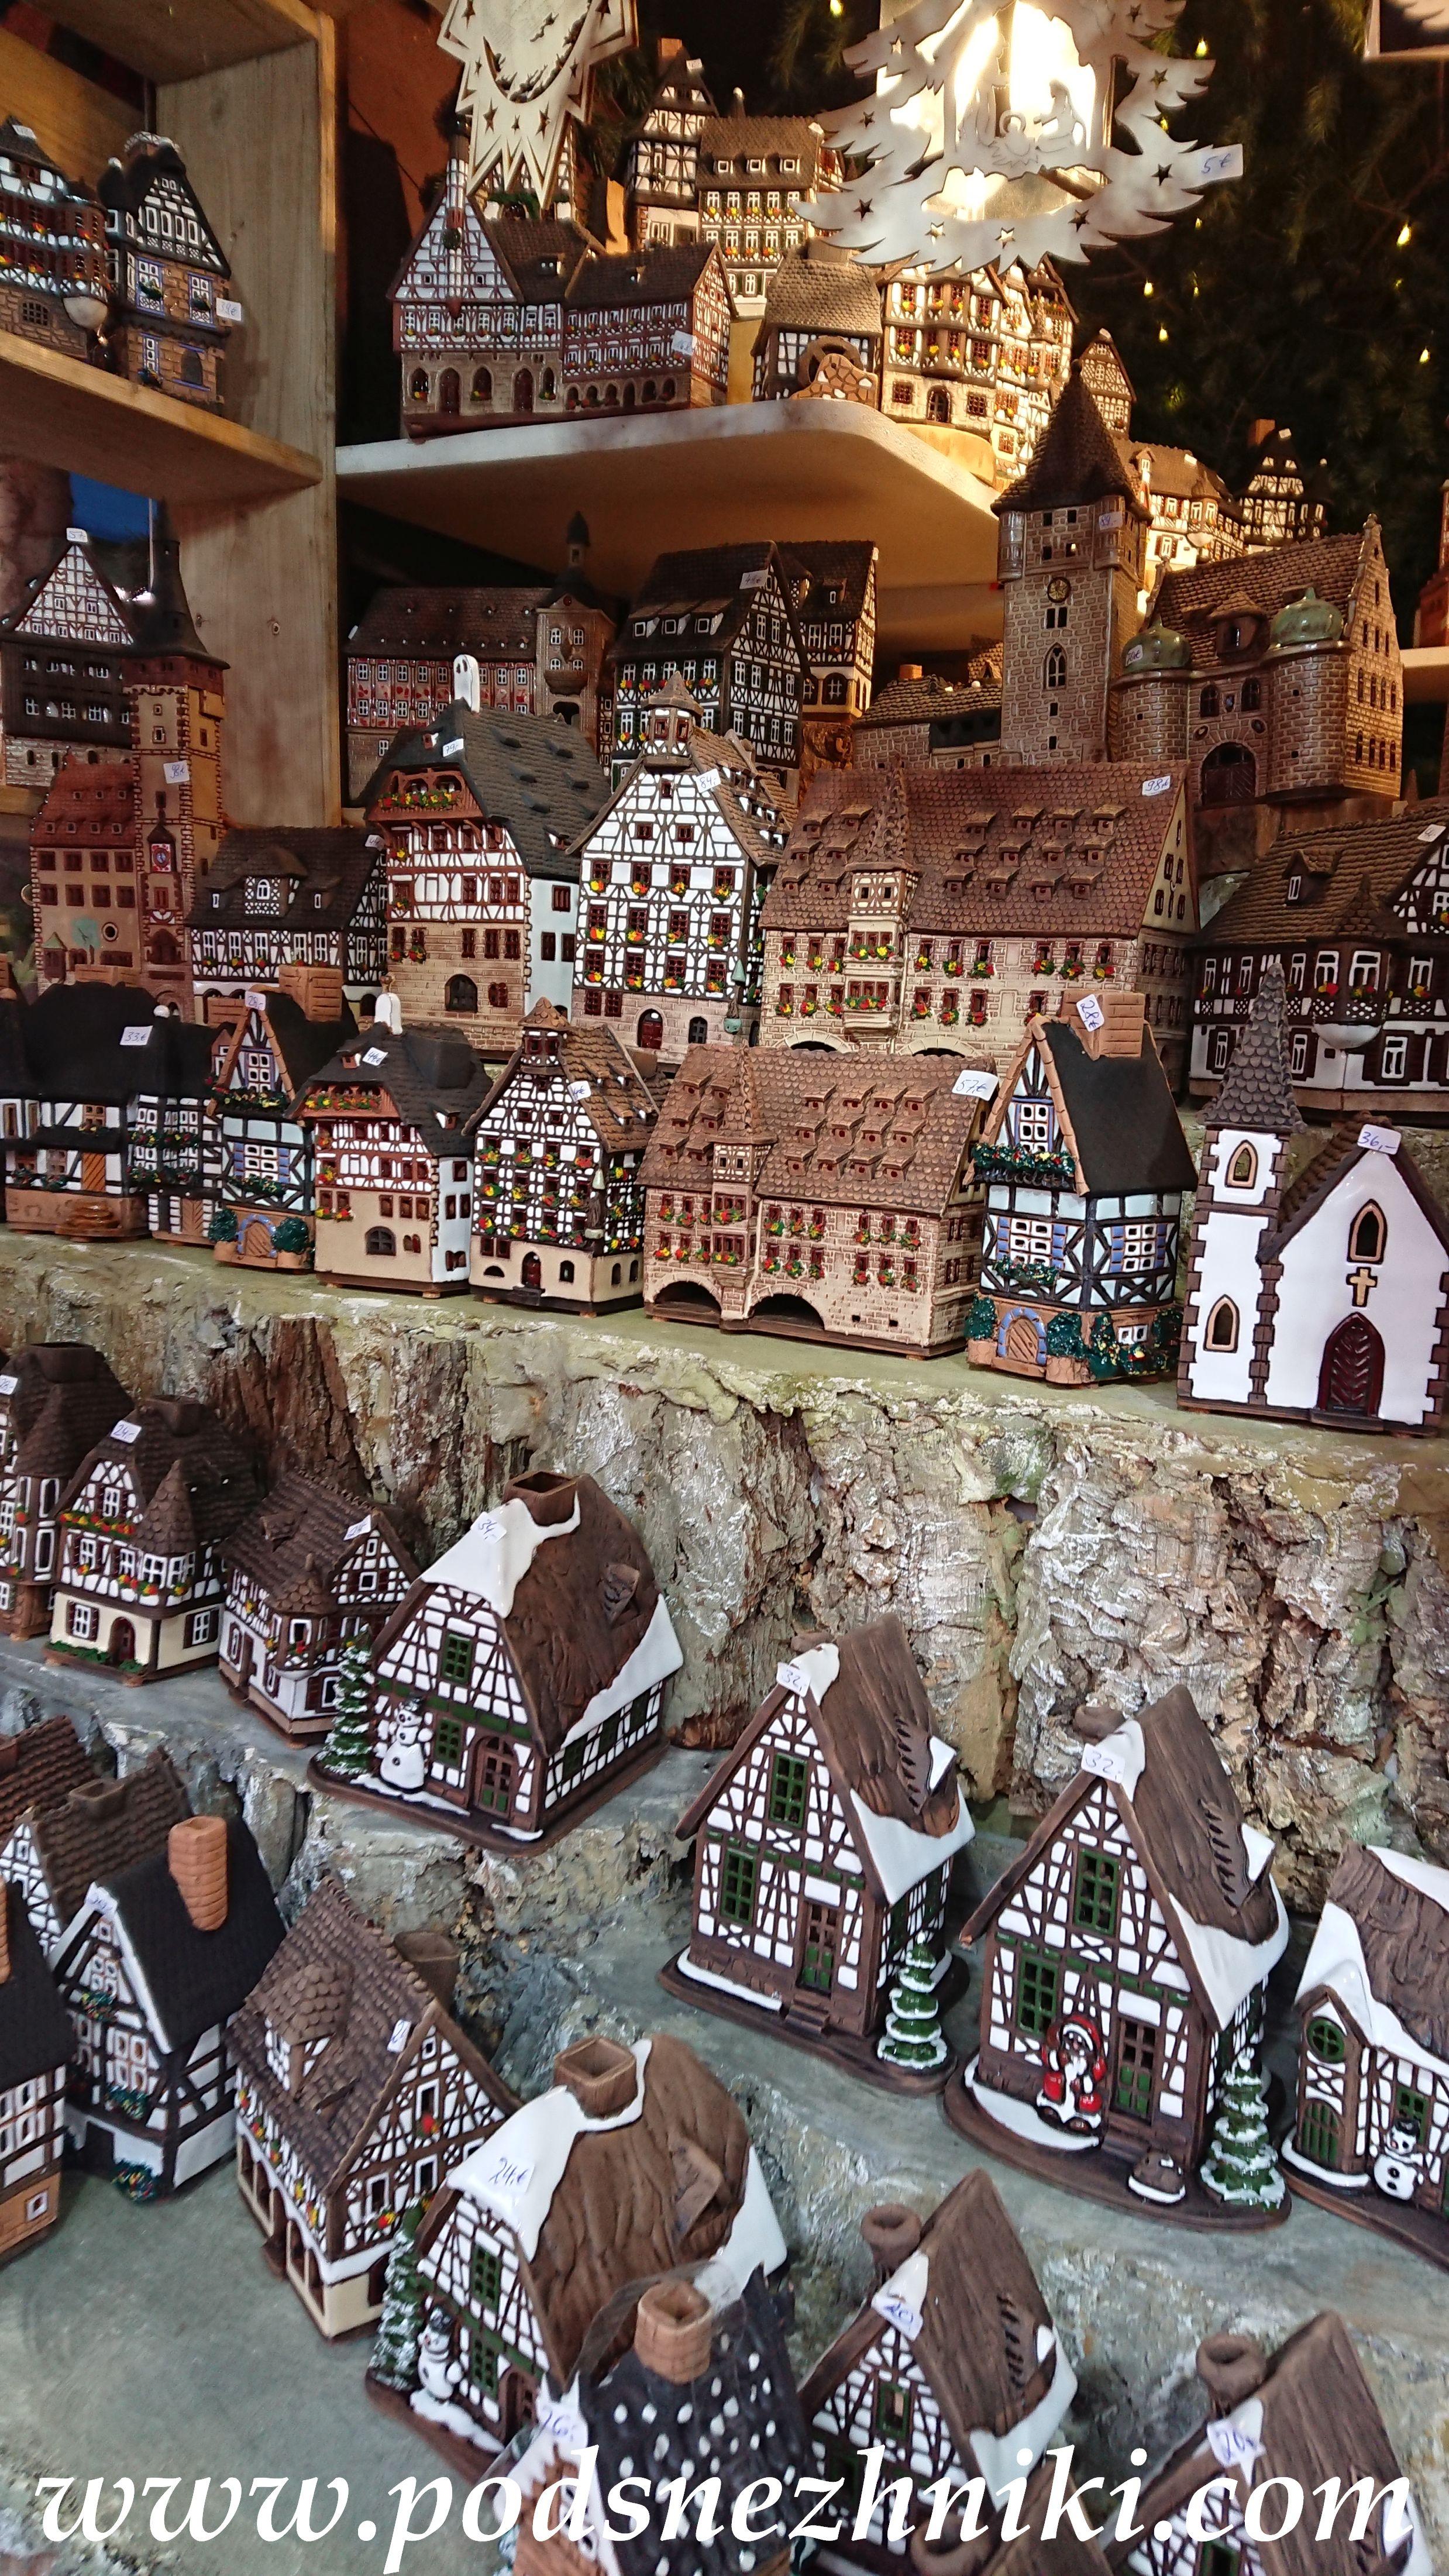 Экскурсия "Кукольное Рождество в Германии"